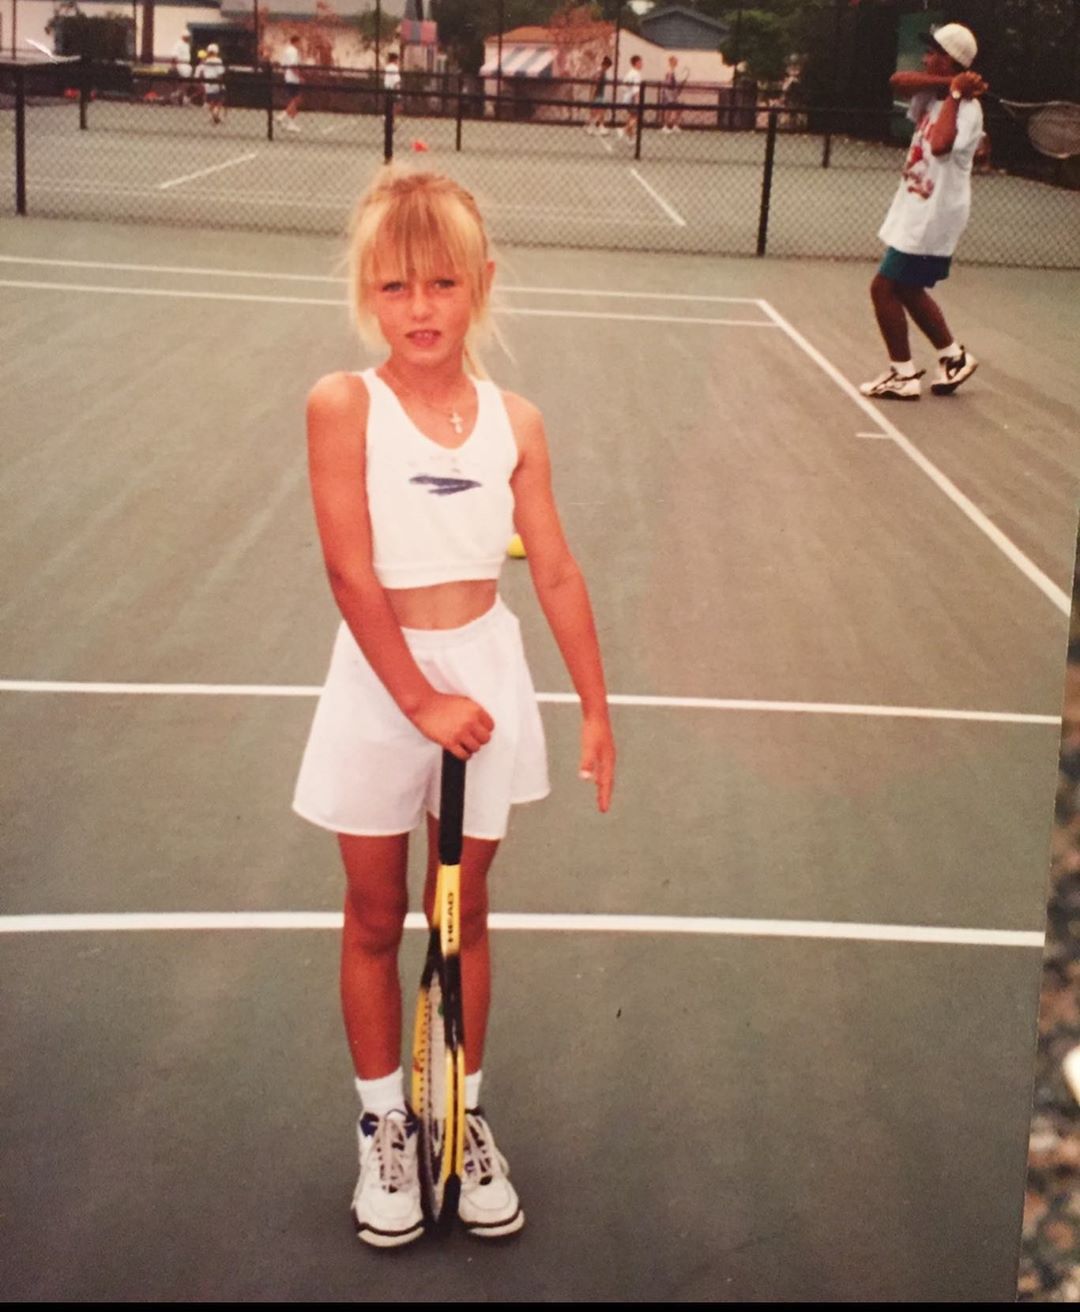 Мария Шарапова родилась в 1987 году в Нягани (ХМАО), вскоре семья переехала в Сочи, где будущая чемпионка начала заниматься теннисом. &laquo;Теннисом я начала заниматься в четыре года и была в восторге от этой игры! И сейчас страсть к спорту&nbsp;&mdash; это то, что меня дисциплинирует и мотивирует на протяжении всей карьеры. Я счастлива, что моя детская мечта расцвела и спустя годы привела меня к тем успехам, которых я достигла&raquo;,&nbsp;&mdash; рассказала Шарапова в интервью
